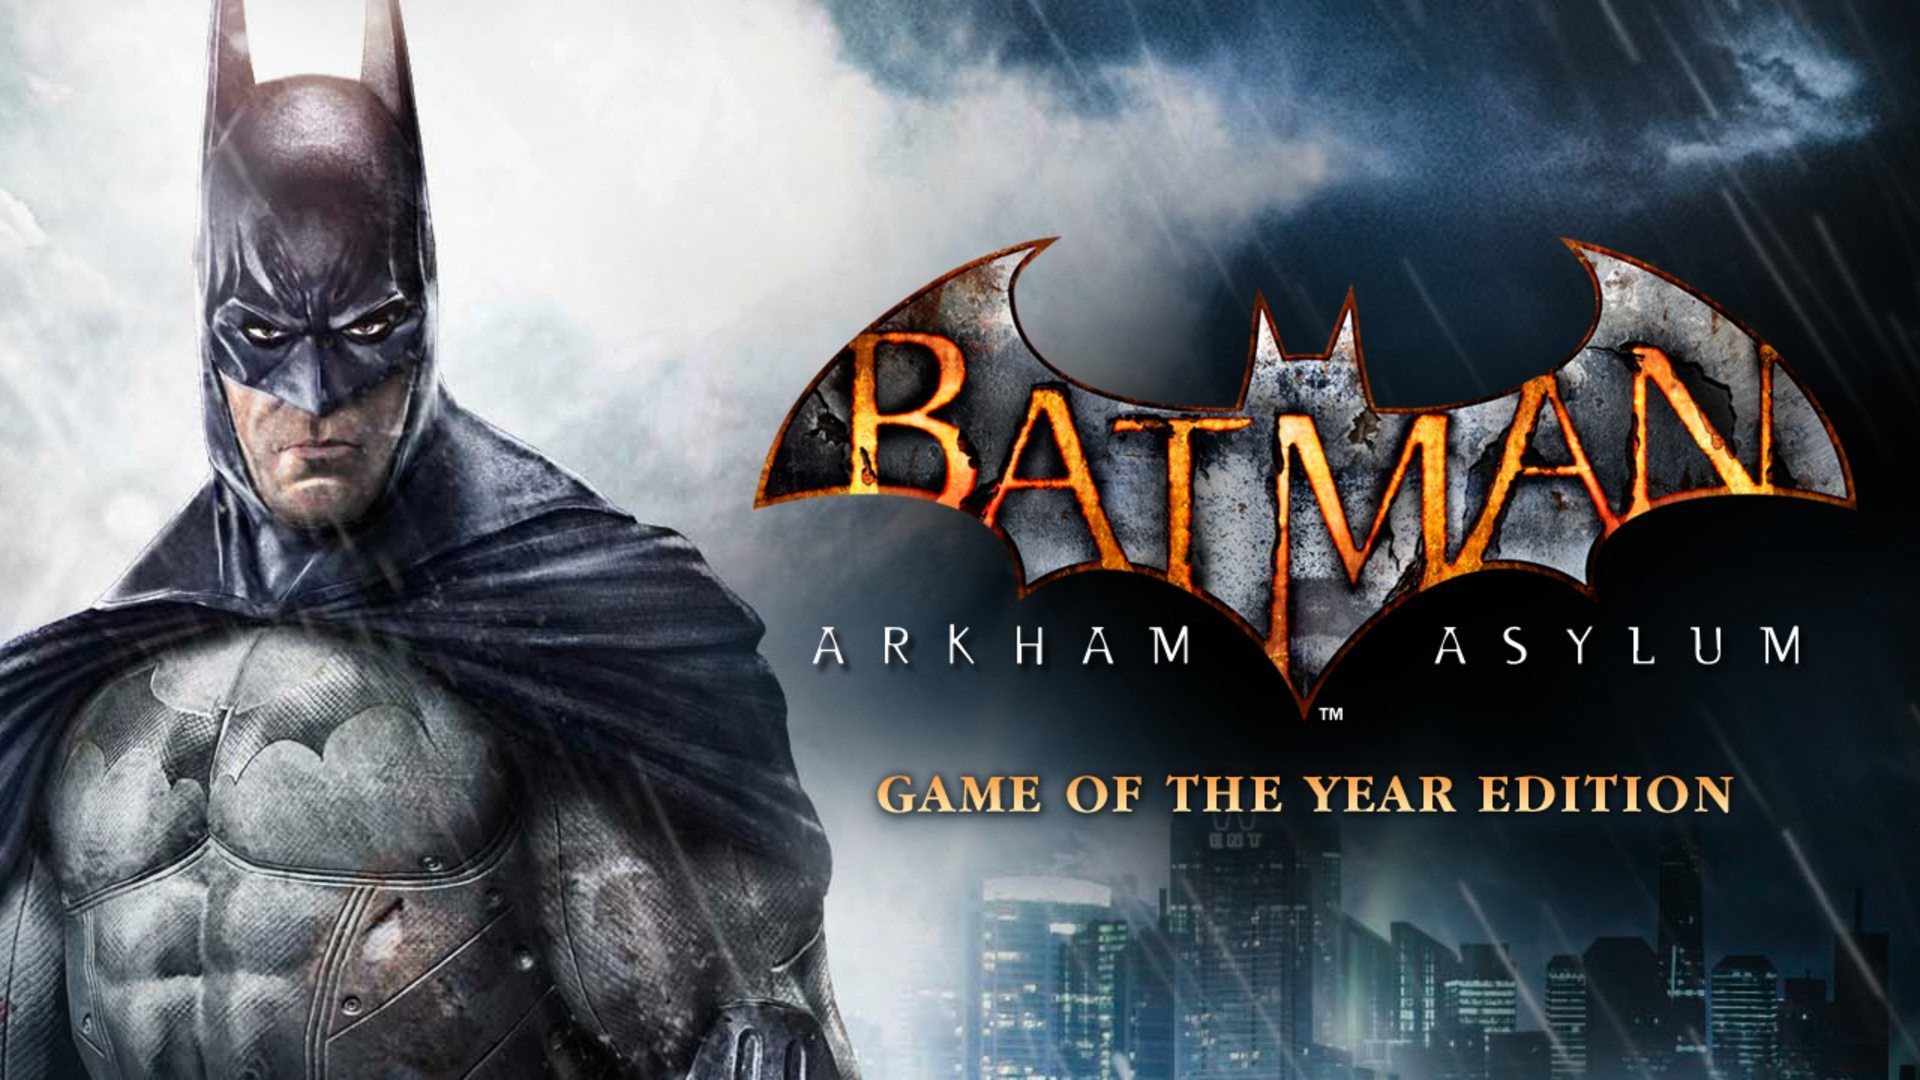 Игры game of the year edition. Batman Arkham Asylum GOTY Edition. Бэтмен 2009 Arkham Asylum. Бэтмен 2010 игра. Бэтмен Аркхем асилум Бэтмен.